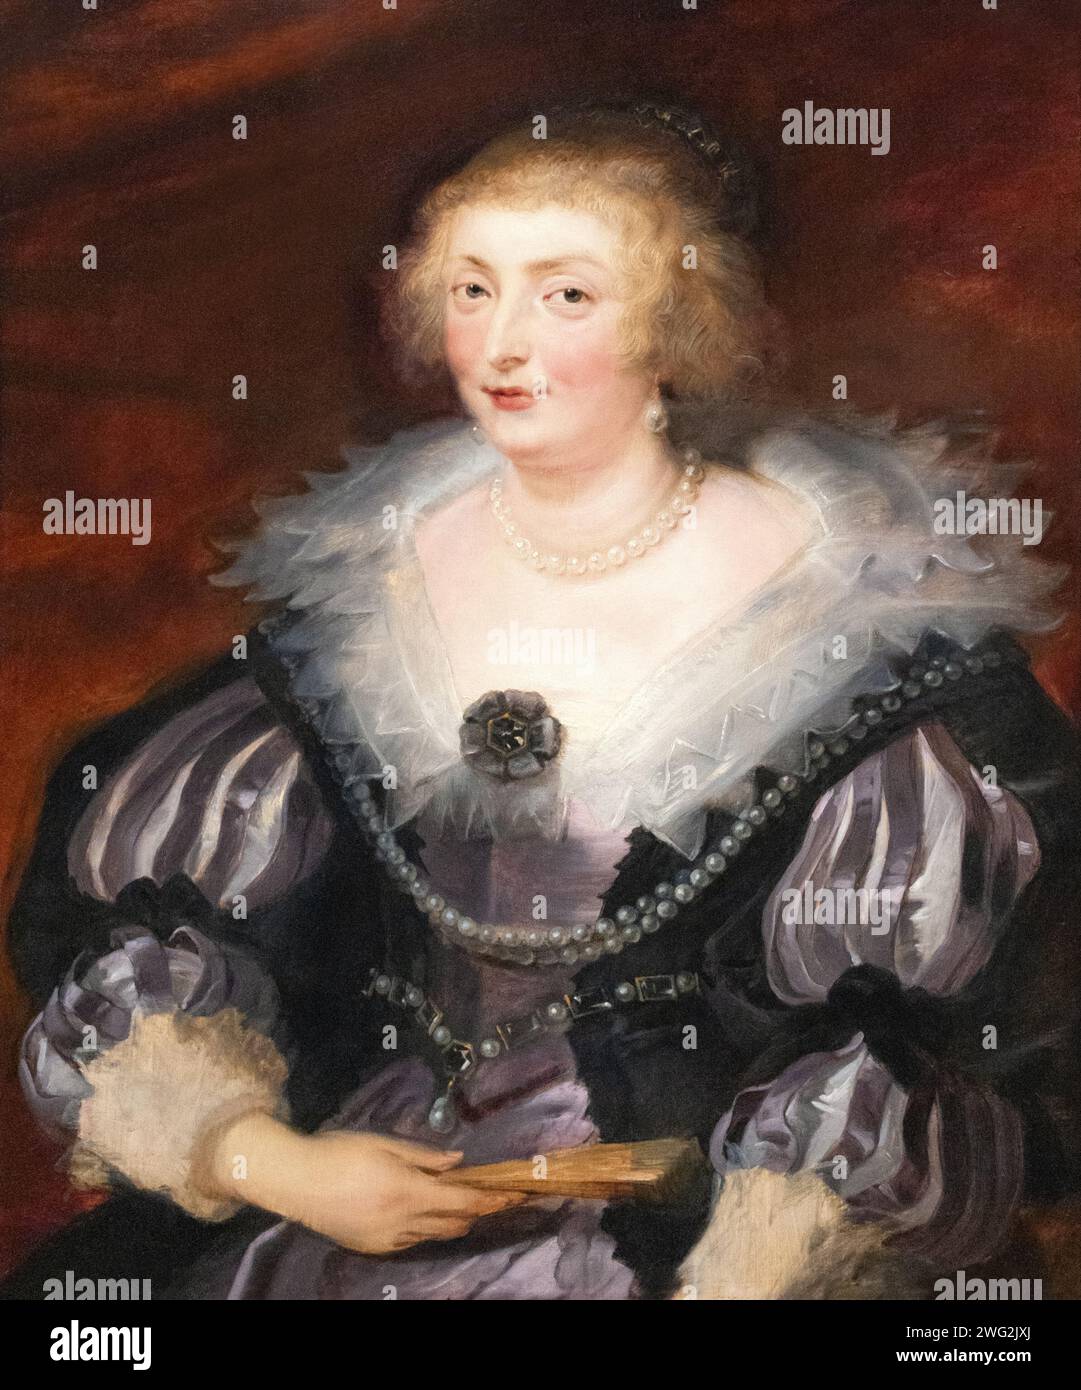 Sir Peter Paul Rubens Gemälde, Porträt einer Dame 1625; Rubens Porträt, Identität ist unbekannt. Porträt einer Frau aus dem 17. Jahrhundert. Barockkunst. Stockfoto